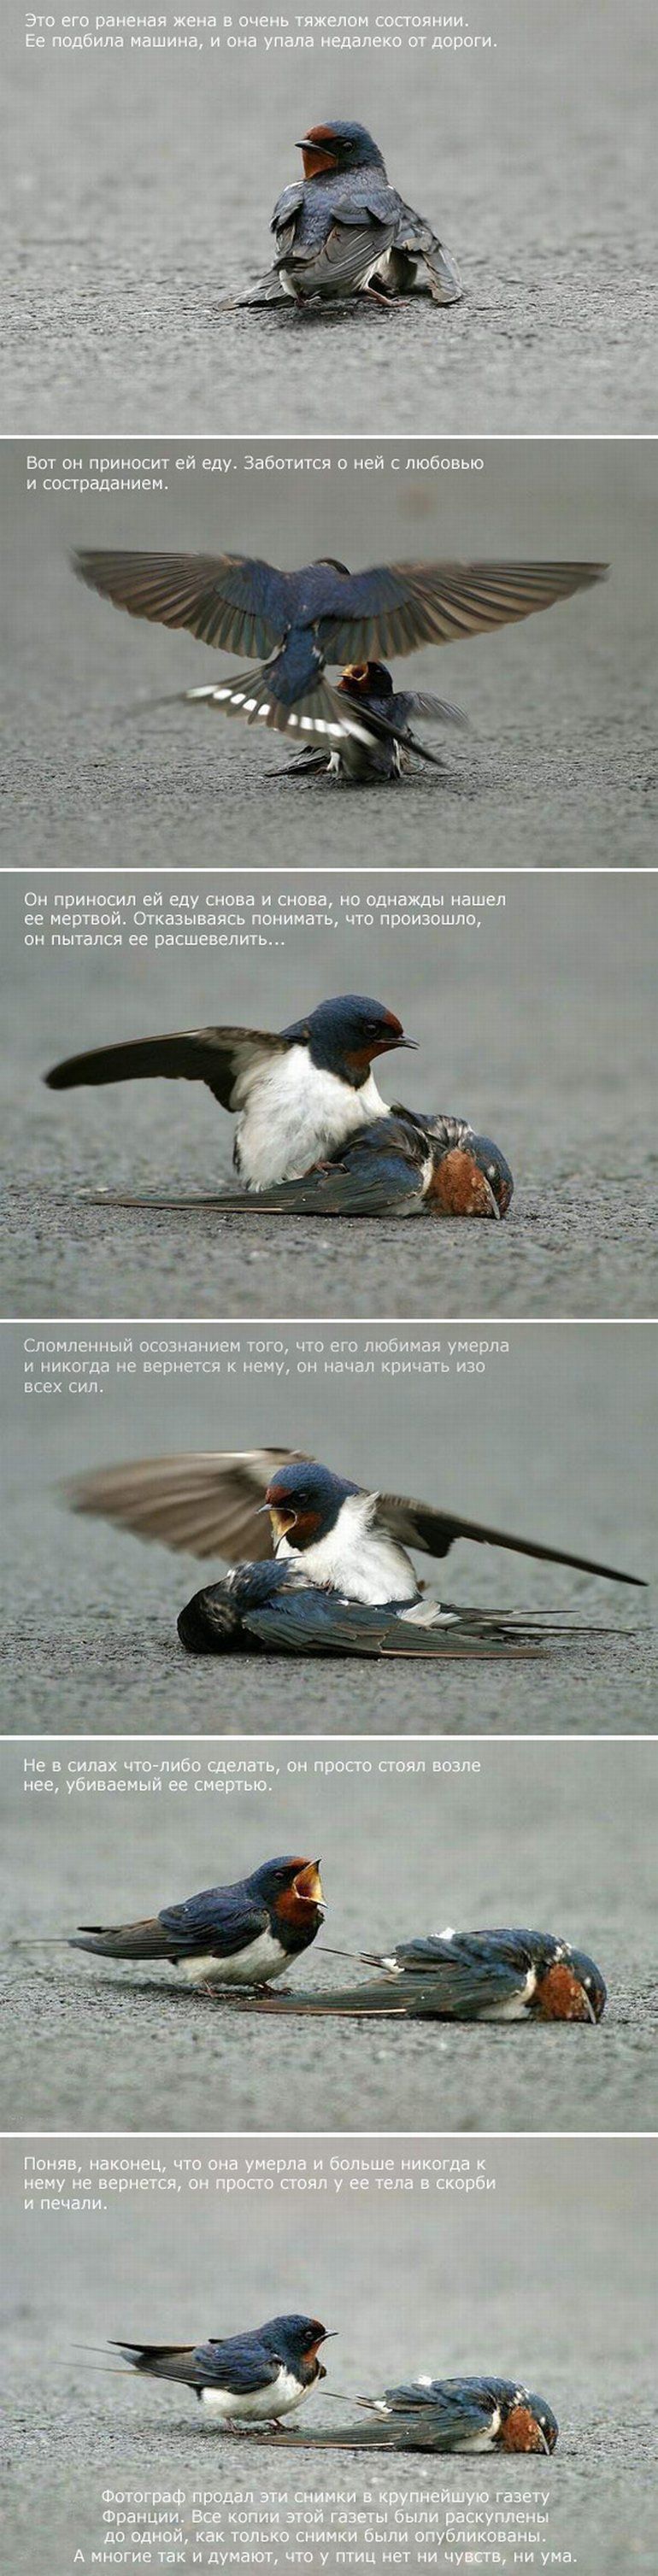 История птичьей верности (6 фото)